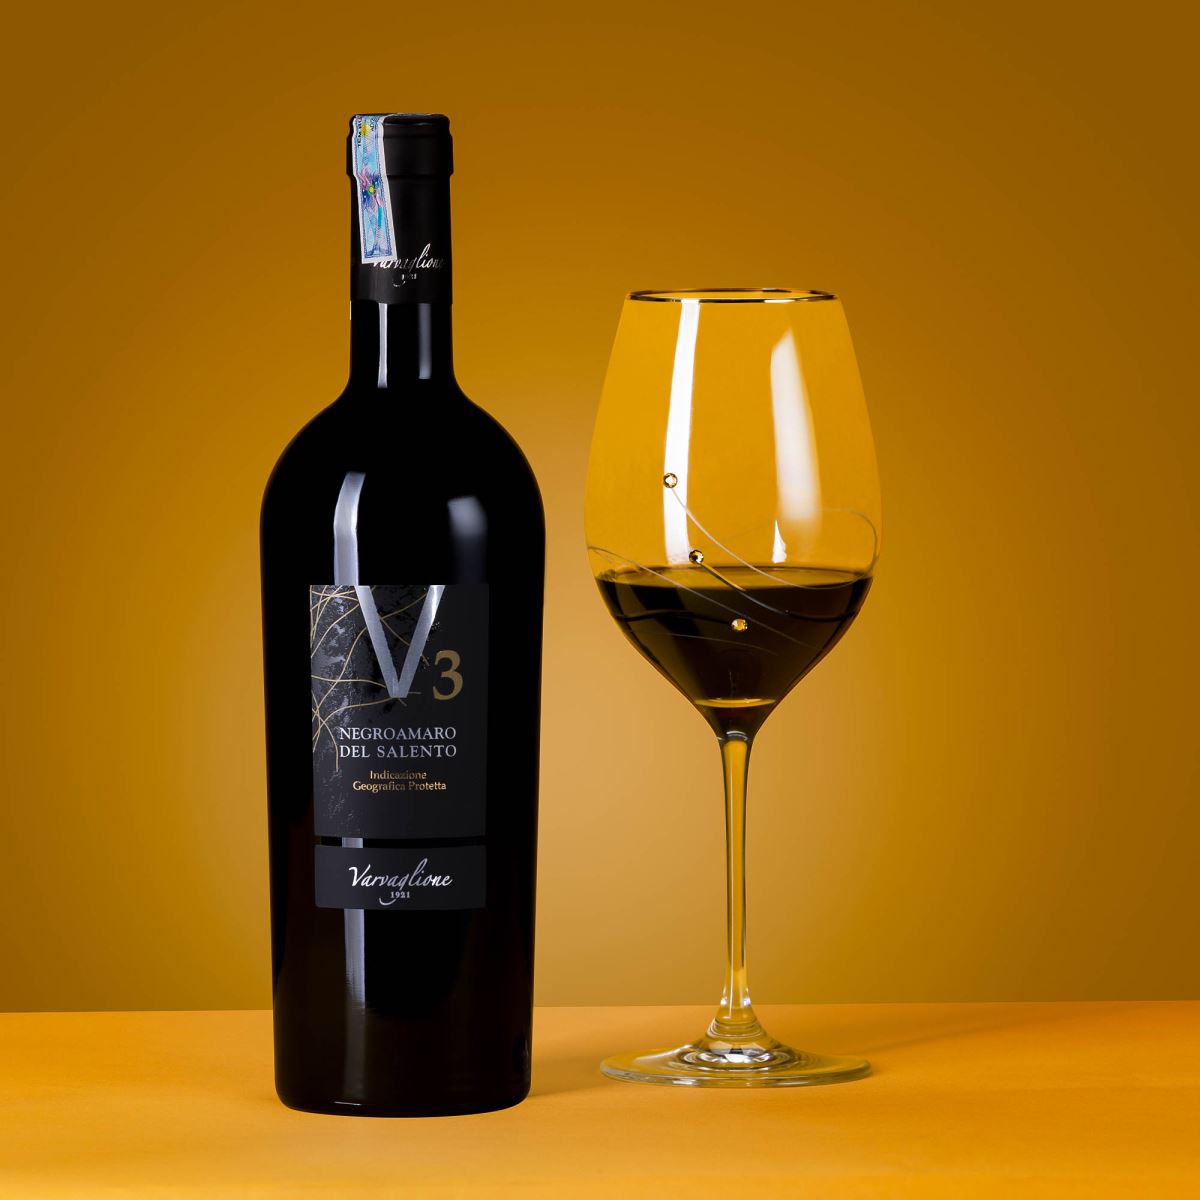 Rượu vang Ý V3 Negroamaro Del Salento được xếp hạng cấp độ IGP